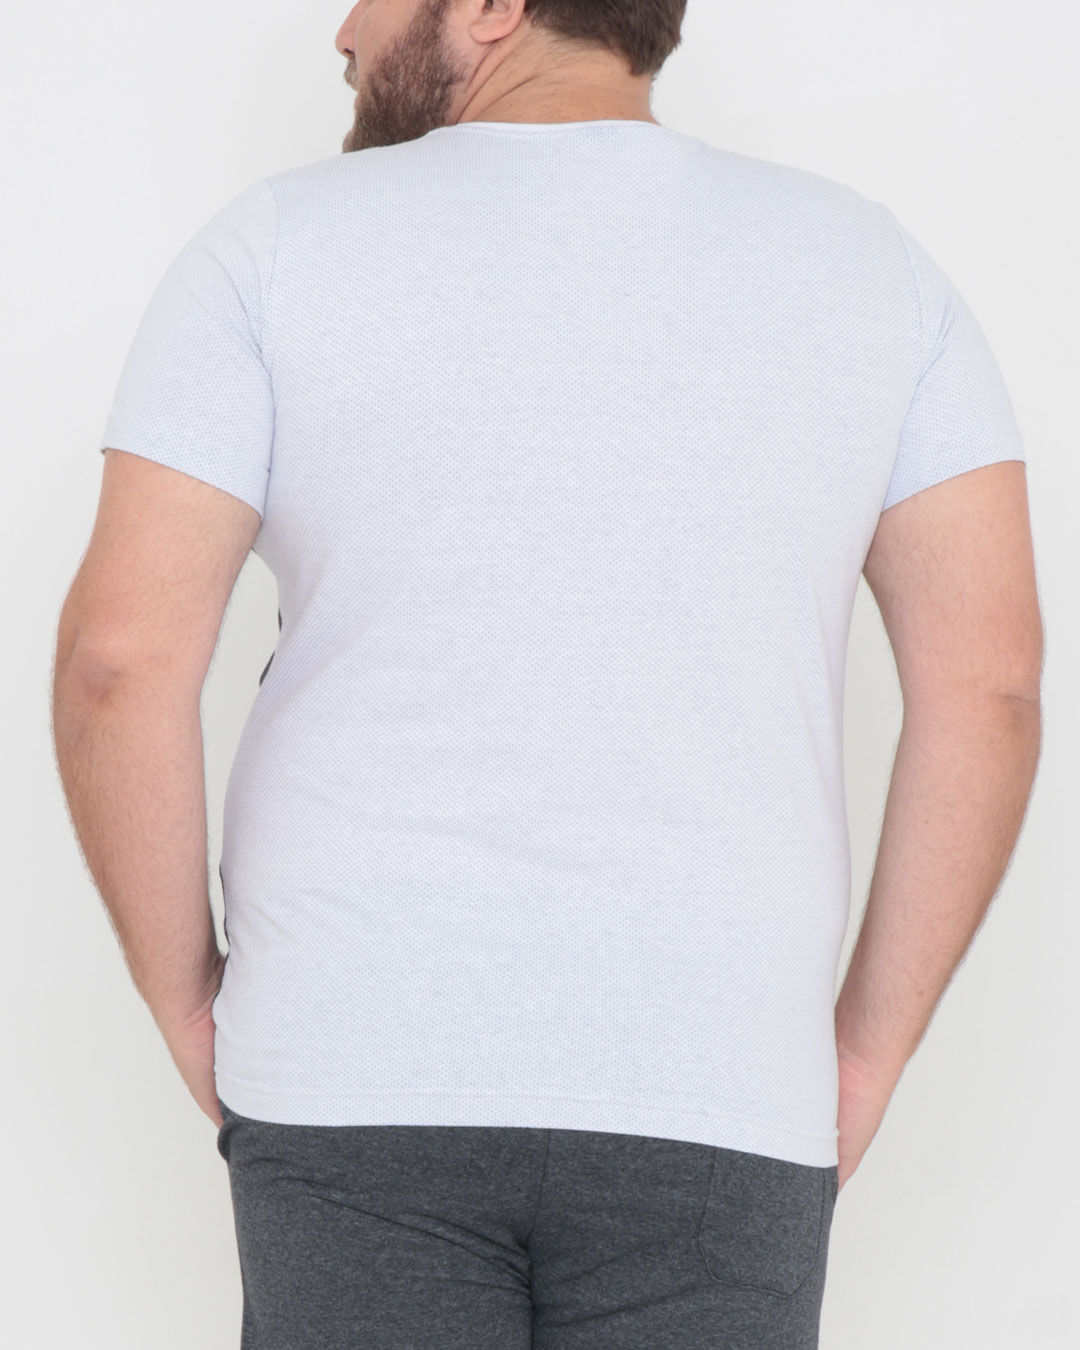 Camiseta-19093-Rec-Plus-Ec---Branco